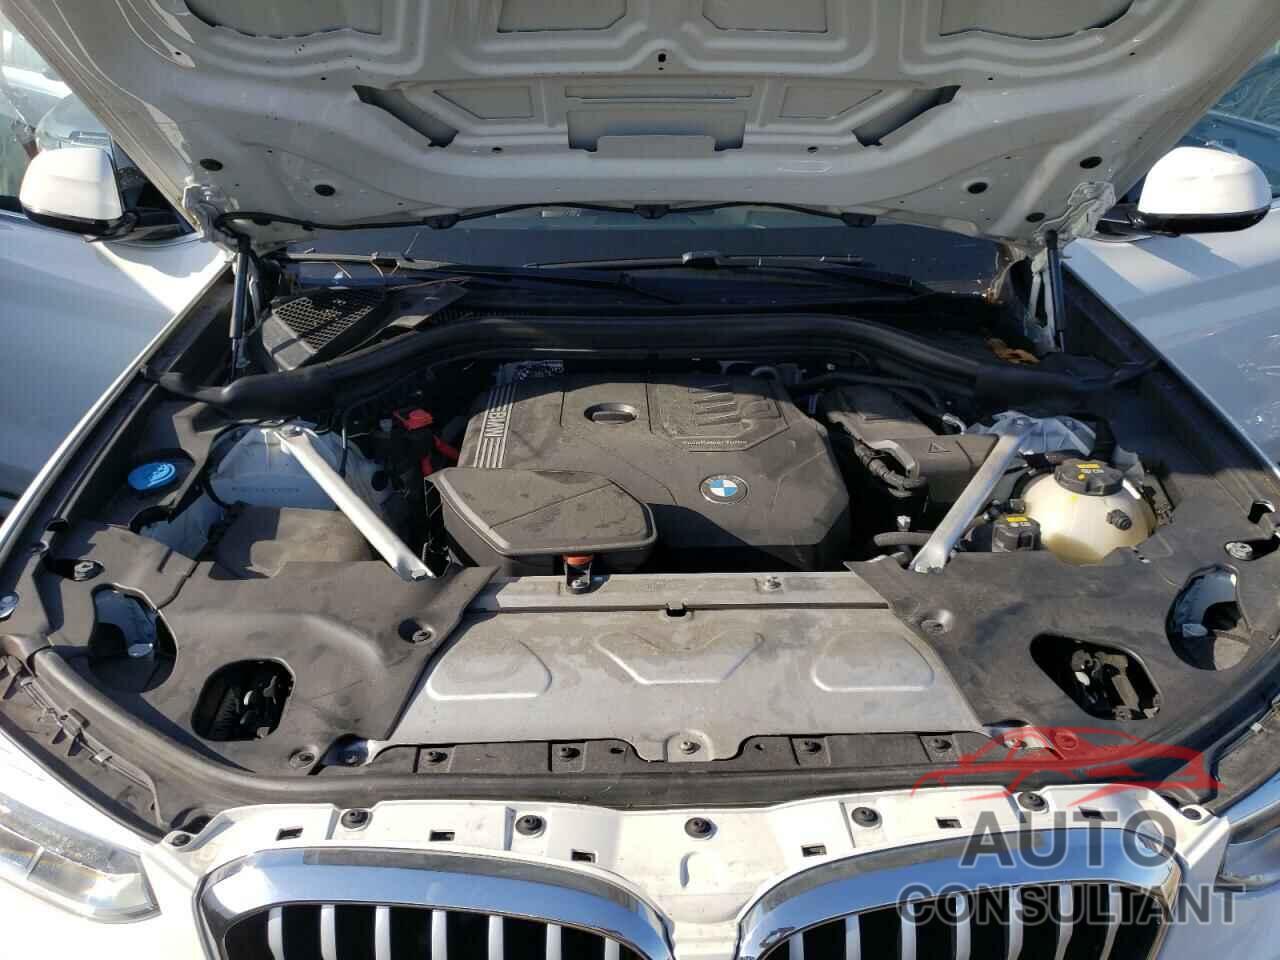 BMW X3 2020 - 5UXTY3C04L9C30399